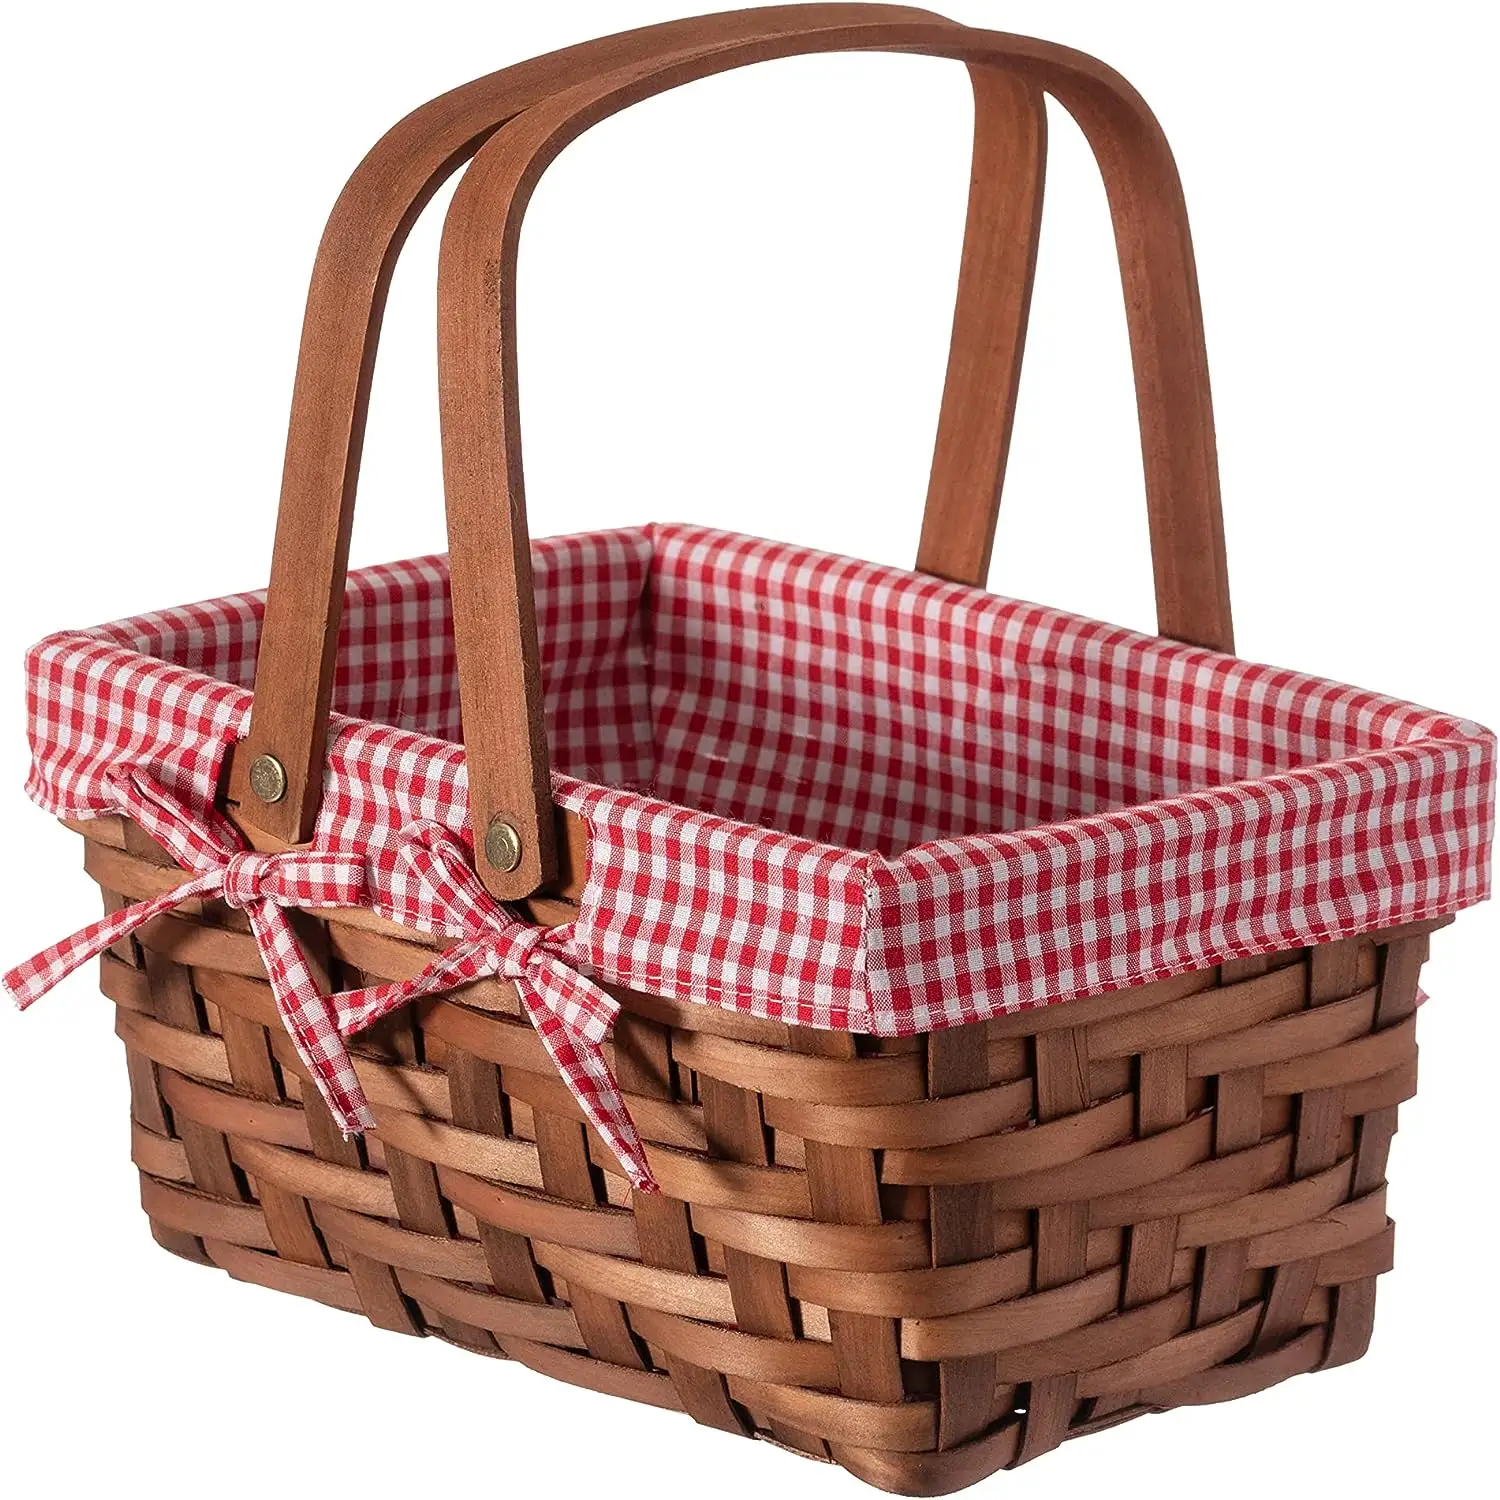 Picknickkorb aus Naturholz und -schnitzeln gewächshaus mit Doppelgriffen und roter und weißer Gingham-Decke